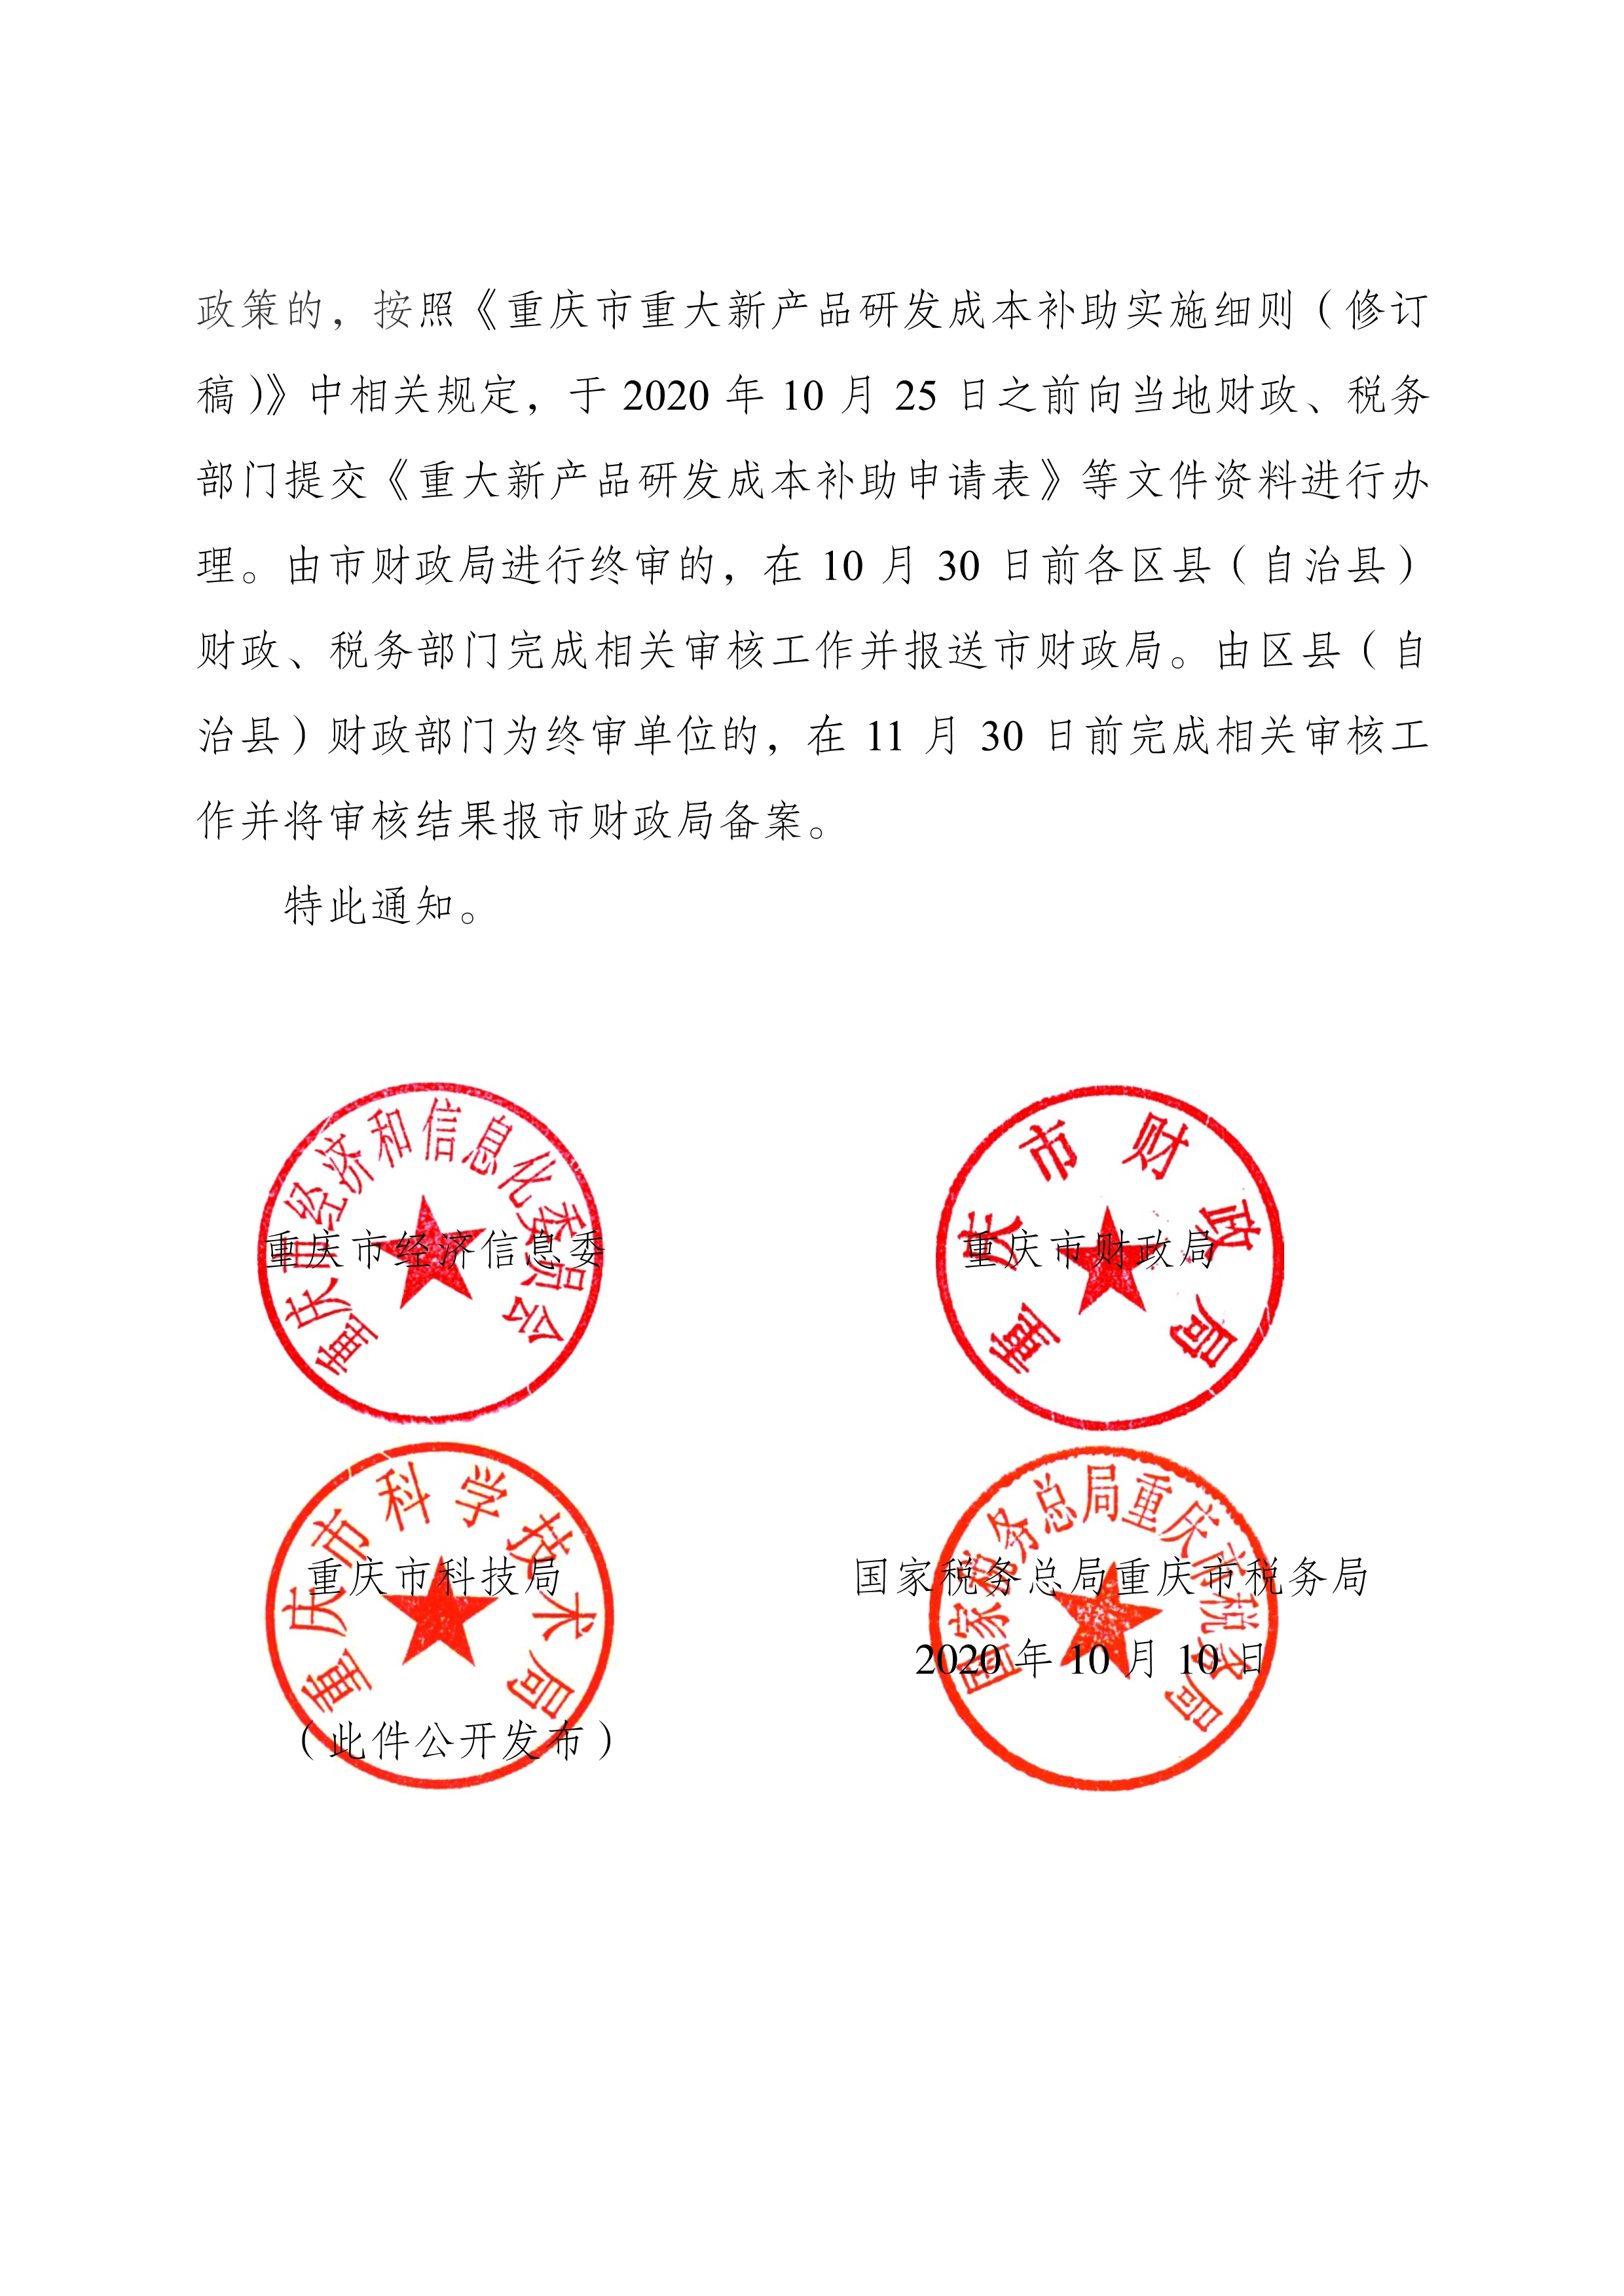 附件4-1关于公布2019年度重庆市重大新产品的通知（渝经信发〔2020〕125号）_2.jpg